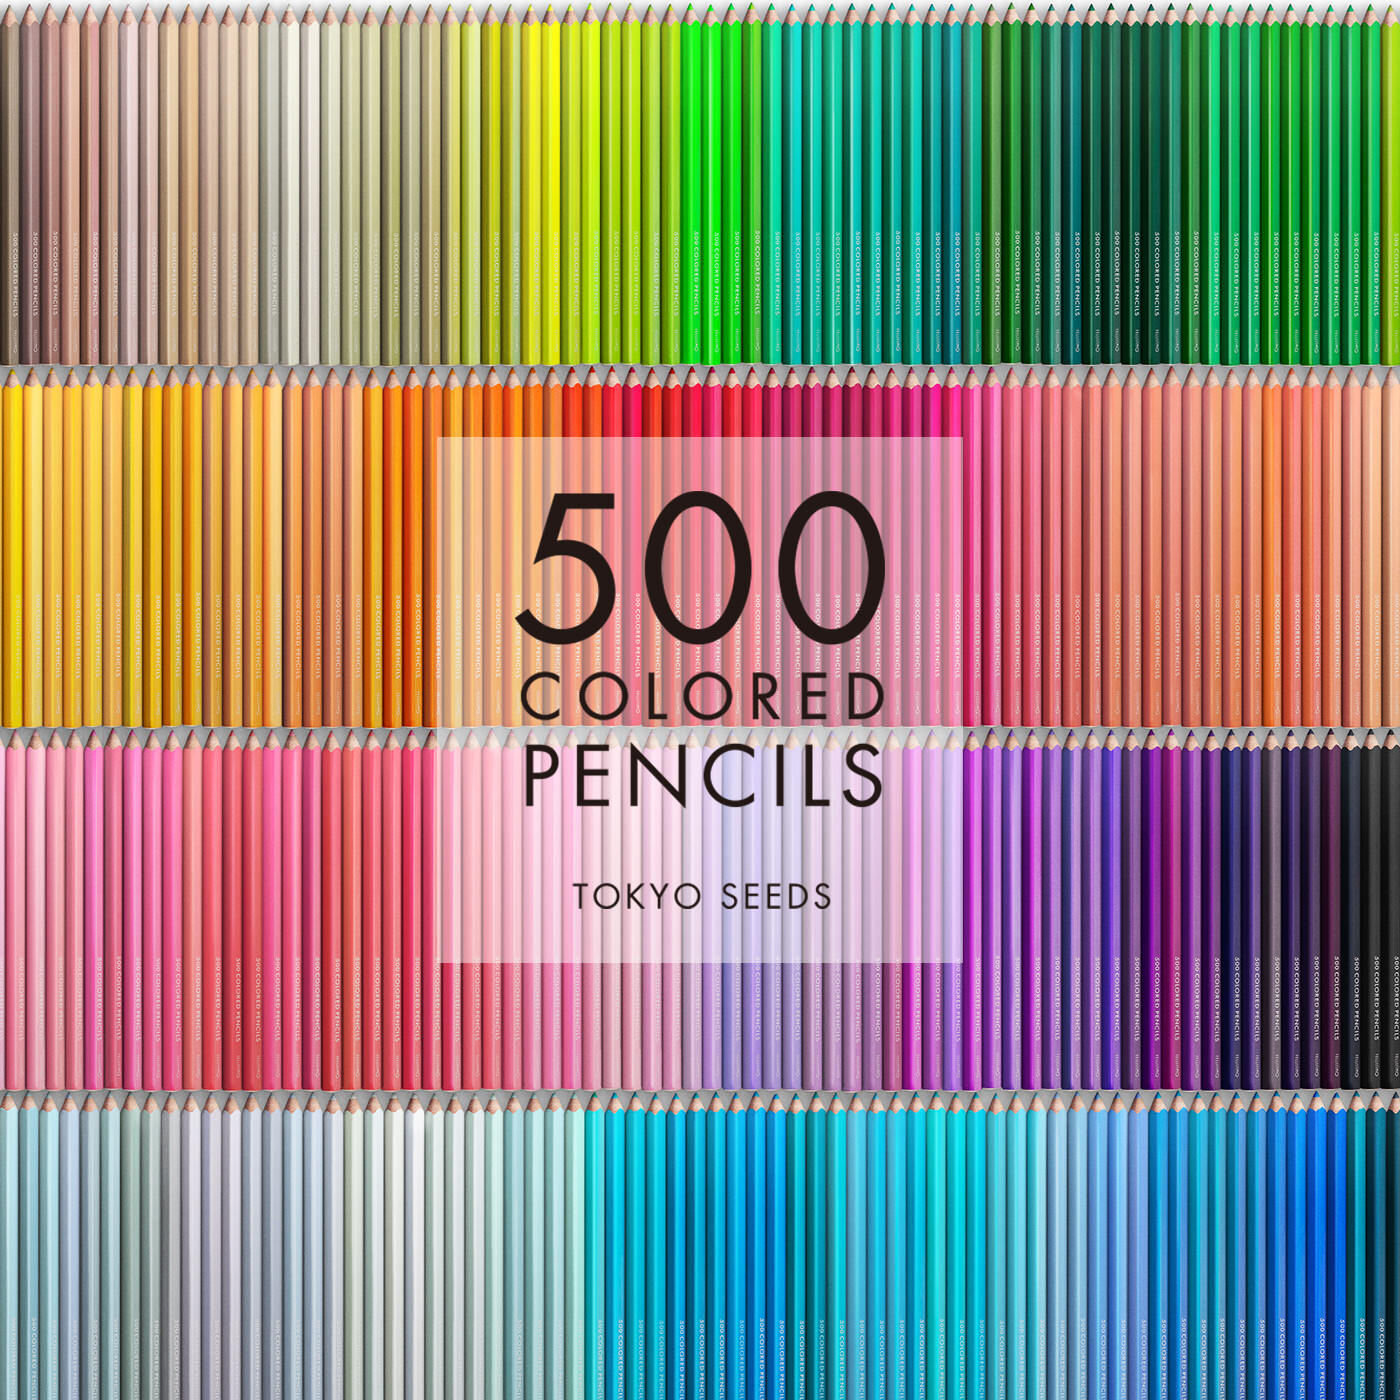 Real Stock|【347/500 TWILIGHT TALES】500色の色えんぴつ TOKYO SEEDS|1992年、世界初の「500色」という膨大な色数の色えんぴつが誕生して以来、その販売数は発売当初から合わせると、世界55ヵ国10万セット以上。今回、メイド・イン・ジャパンにこだわり、すべてが新しく生まれ変わって登場しました。